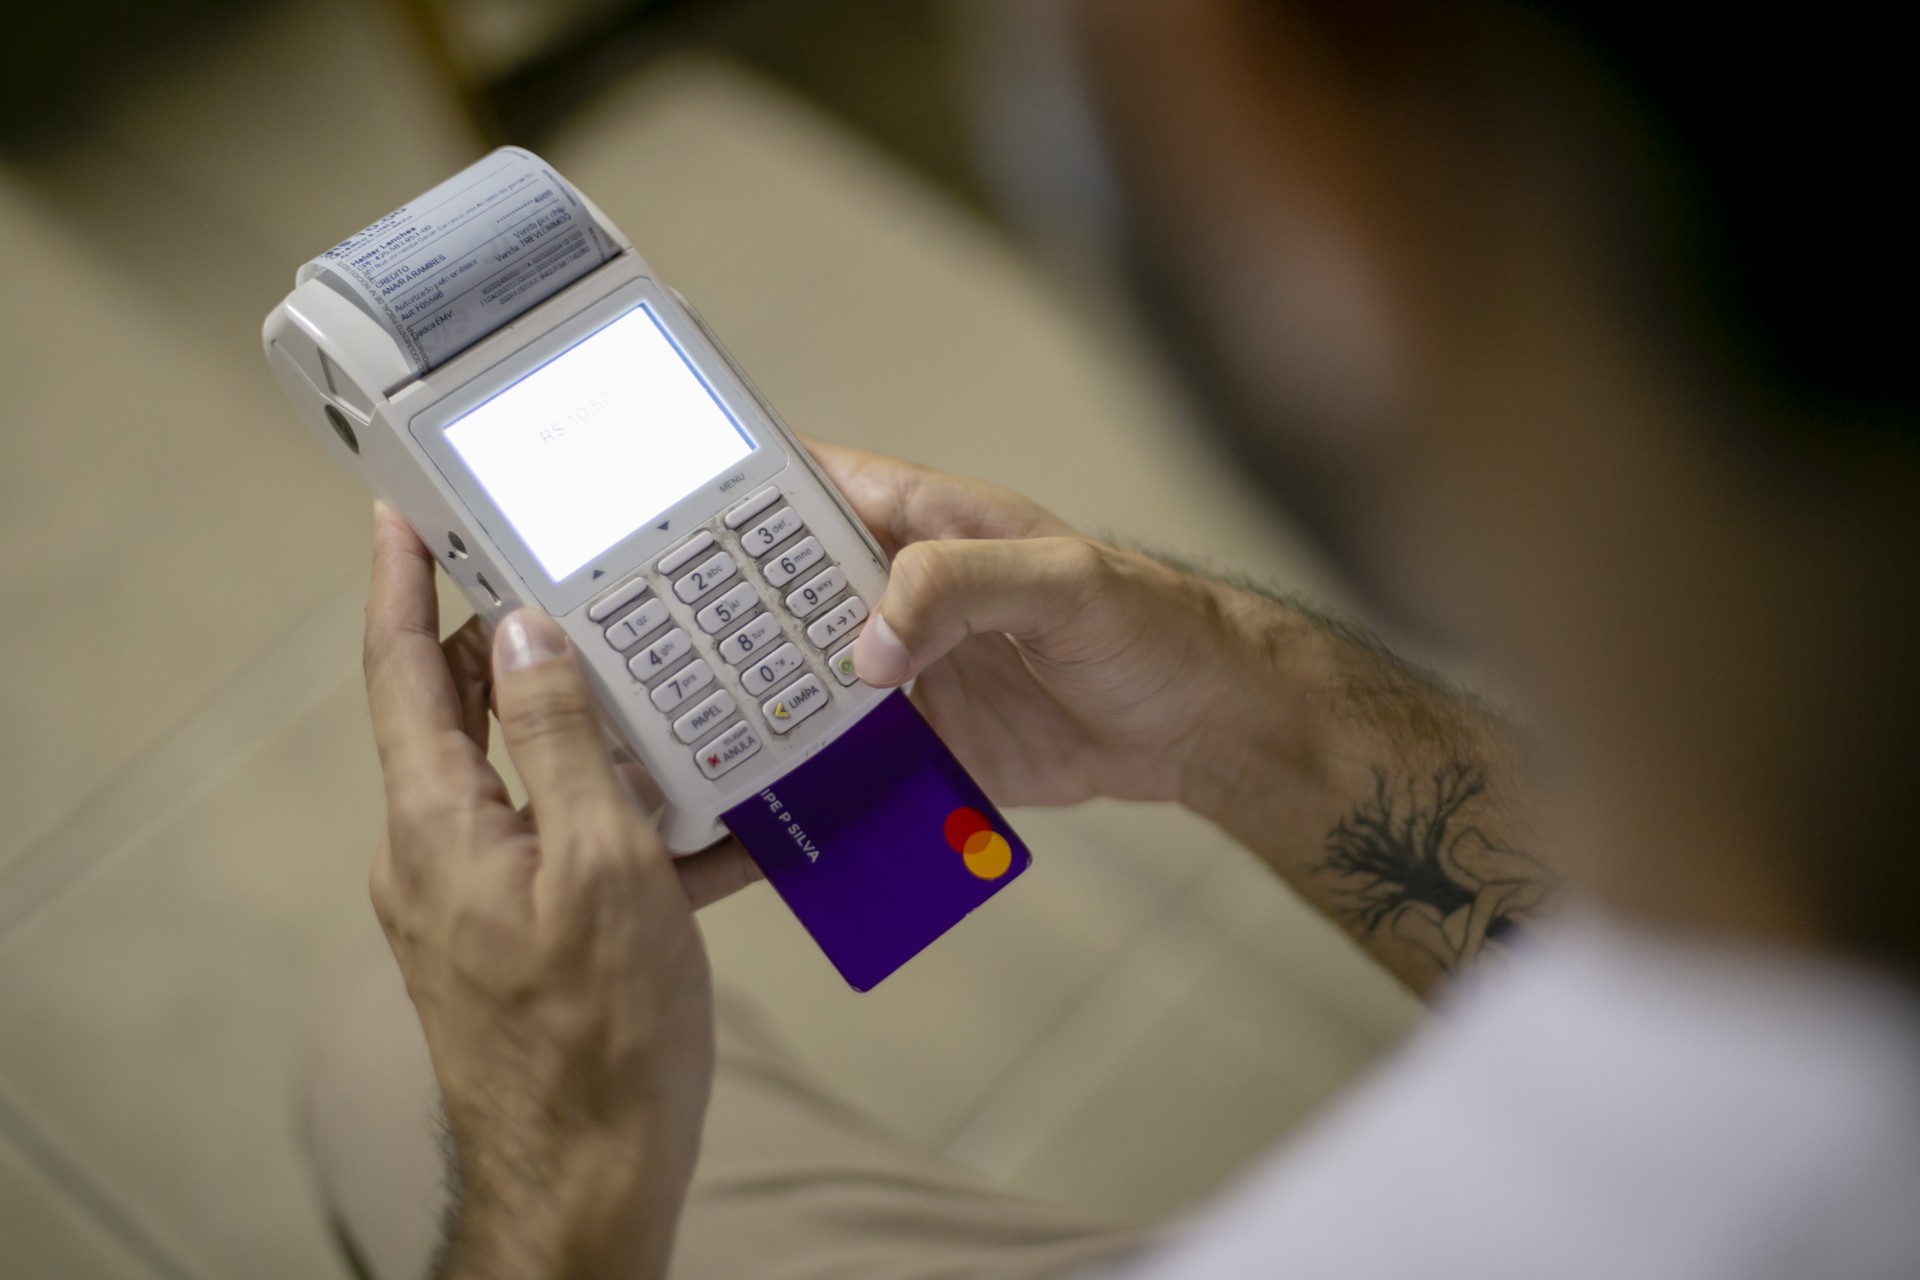 ￼OS JUROS mais caros seguem sendo os do cartão de crédito que chegam a 13,68% ao mês e 365,81% ao ano (Foto: Aurelio Alves/O POVO).)